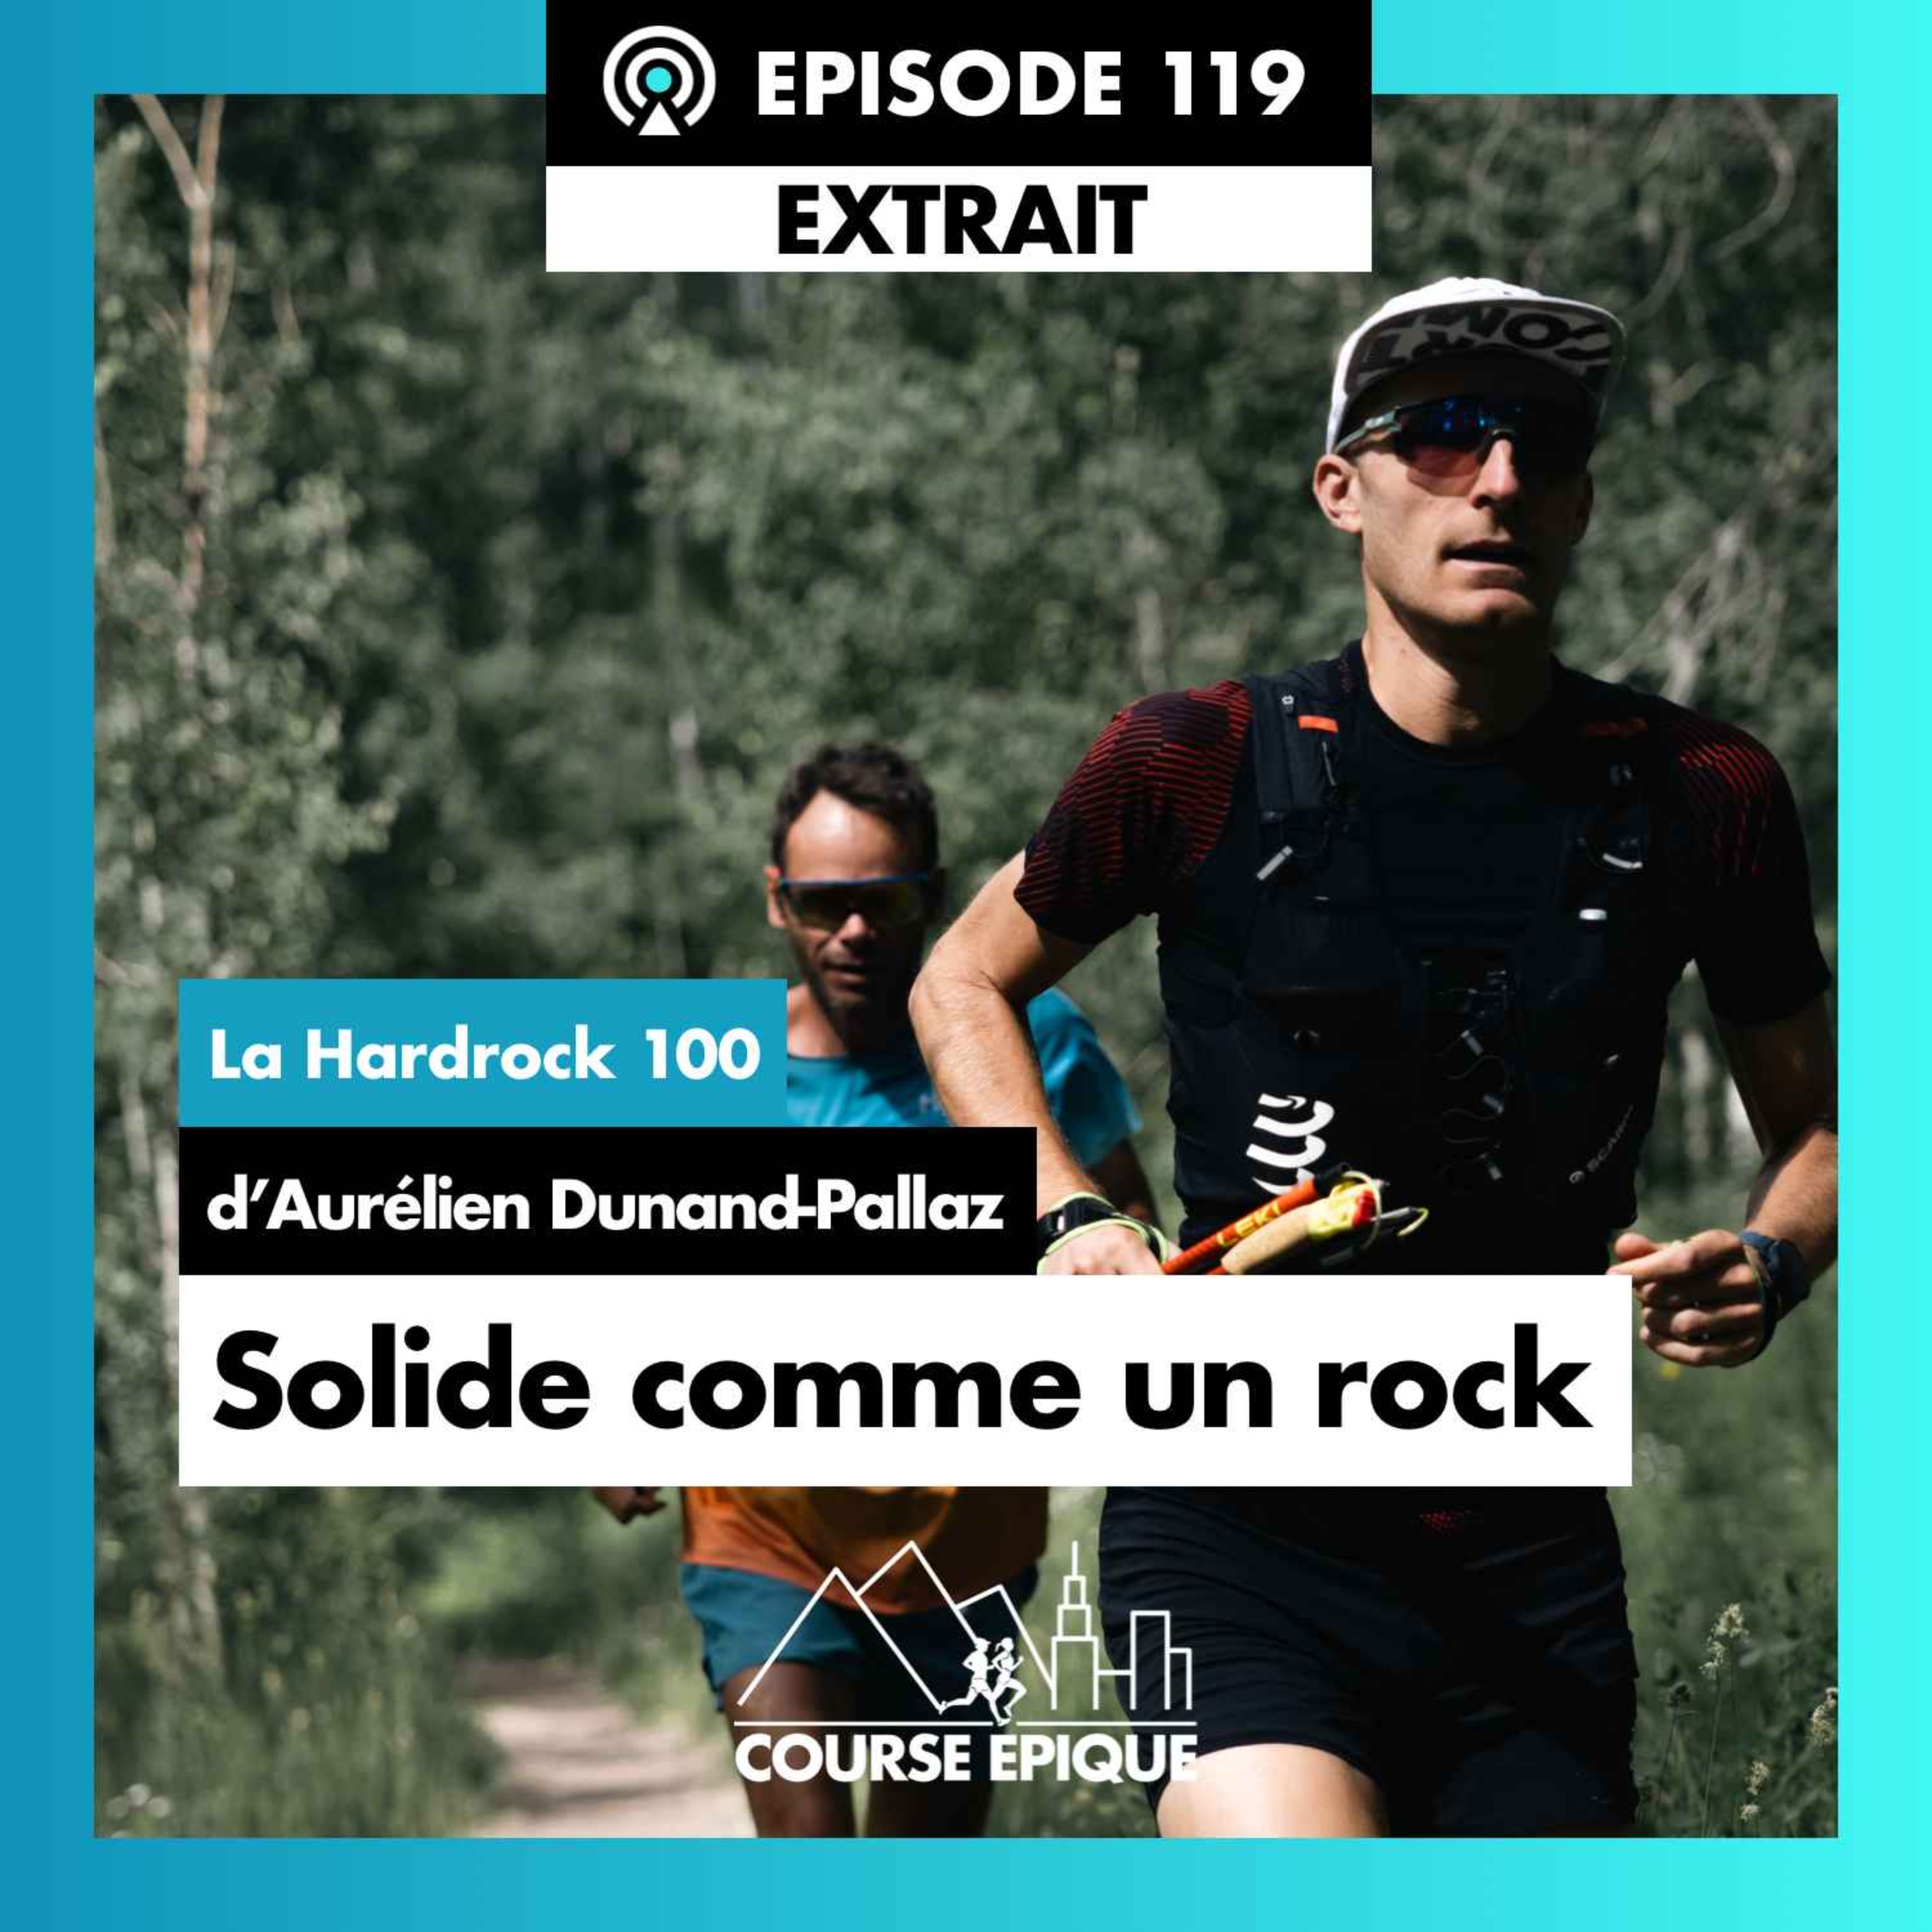 [EXTRAIT]  "Solide comme un rock", la Hardrock 100 d'Aurélien Dunand-Pallaz